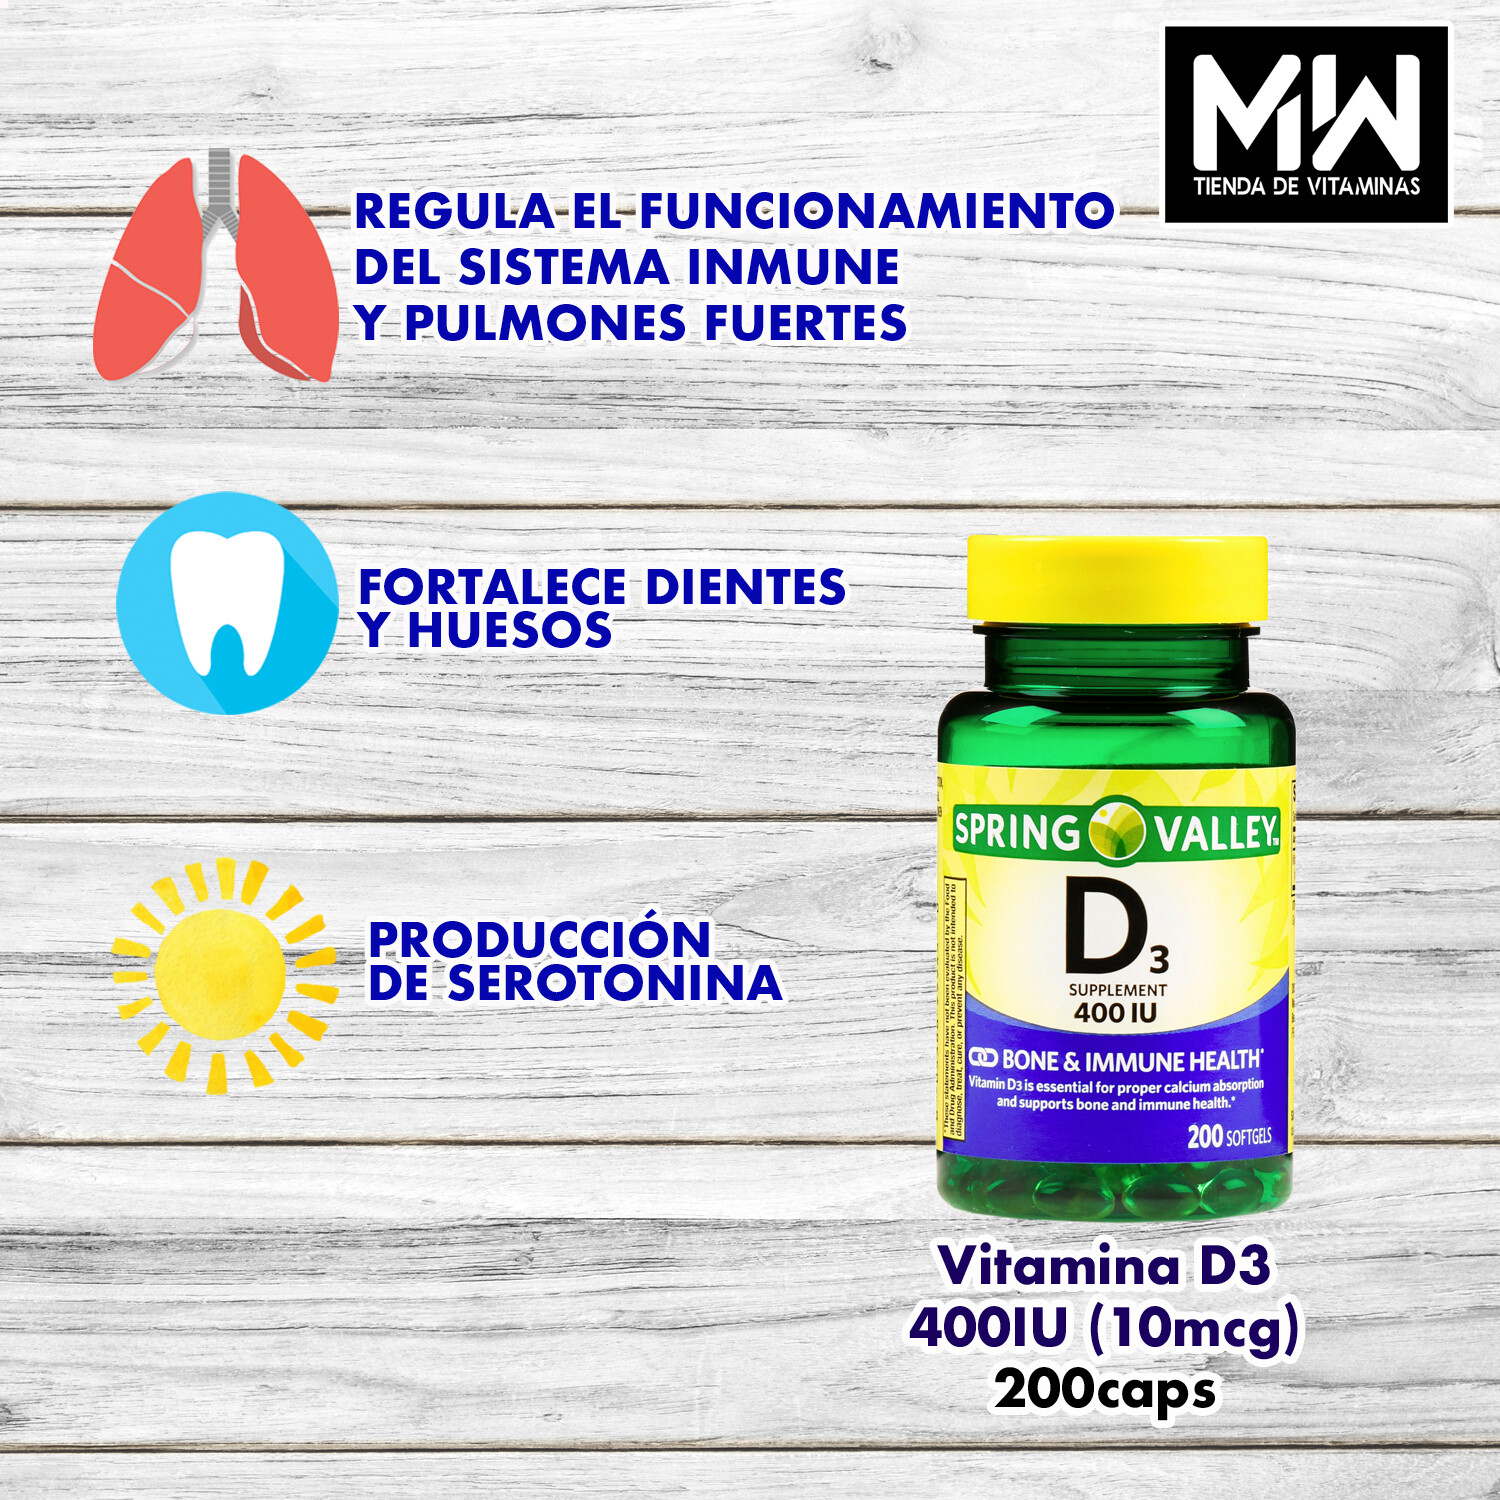 Vitamina D3 / Vitamin D3 10 mcg. (400 IU) 200 Caps.